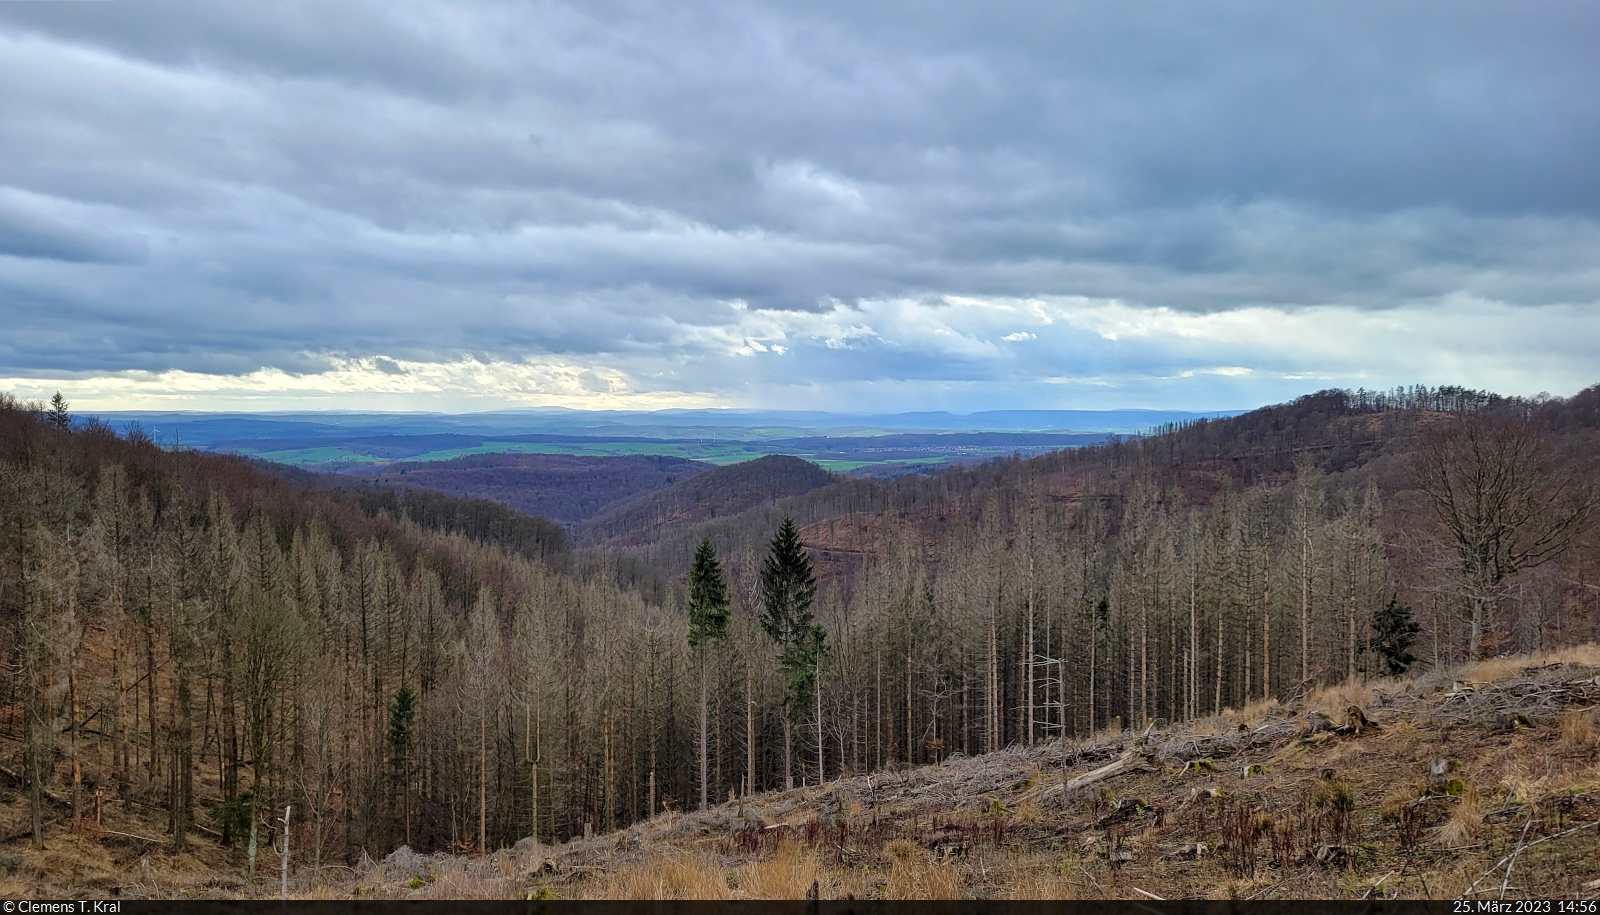 Der Wanderweg zum Großen Knollen im Westharz ermöglicht durch leider zahlreich gefällte Bäume eine Aussicht bis zum Eichsfeld in Thüringen.

🕓 25.3.2023 | 14:56 Uhr